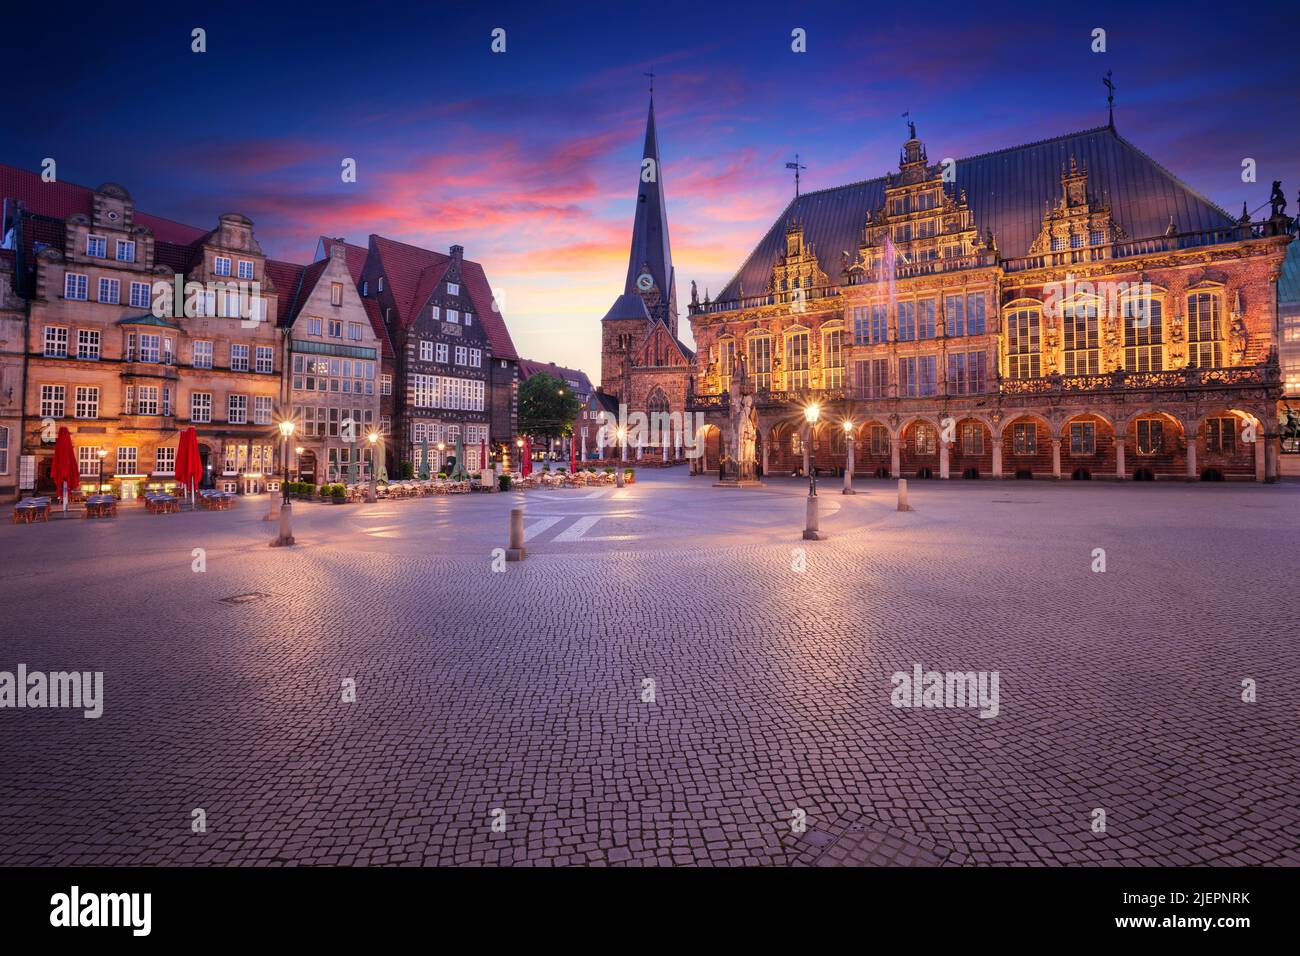 Bremen, Alemania. Imagen del paisaje urbano de la ciudad hanseática de Bremen, Alemania, con la histórica plaza del mercado y el ayuntamiento al amanecer en verano. Foto de stock